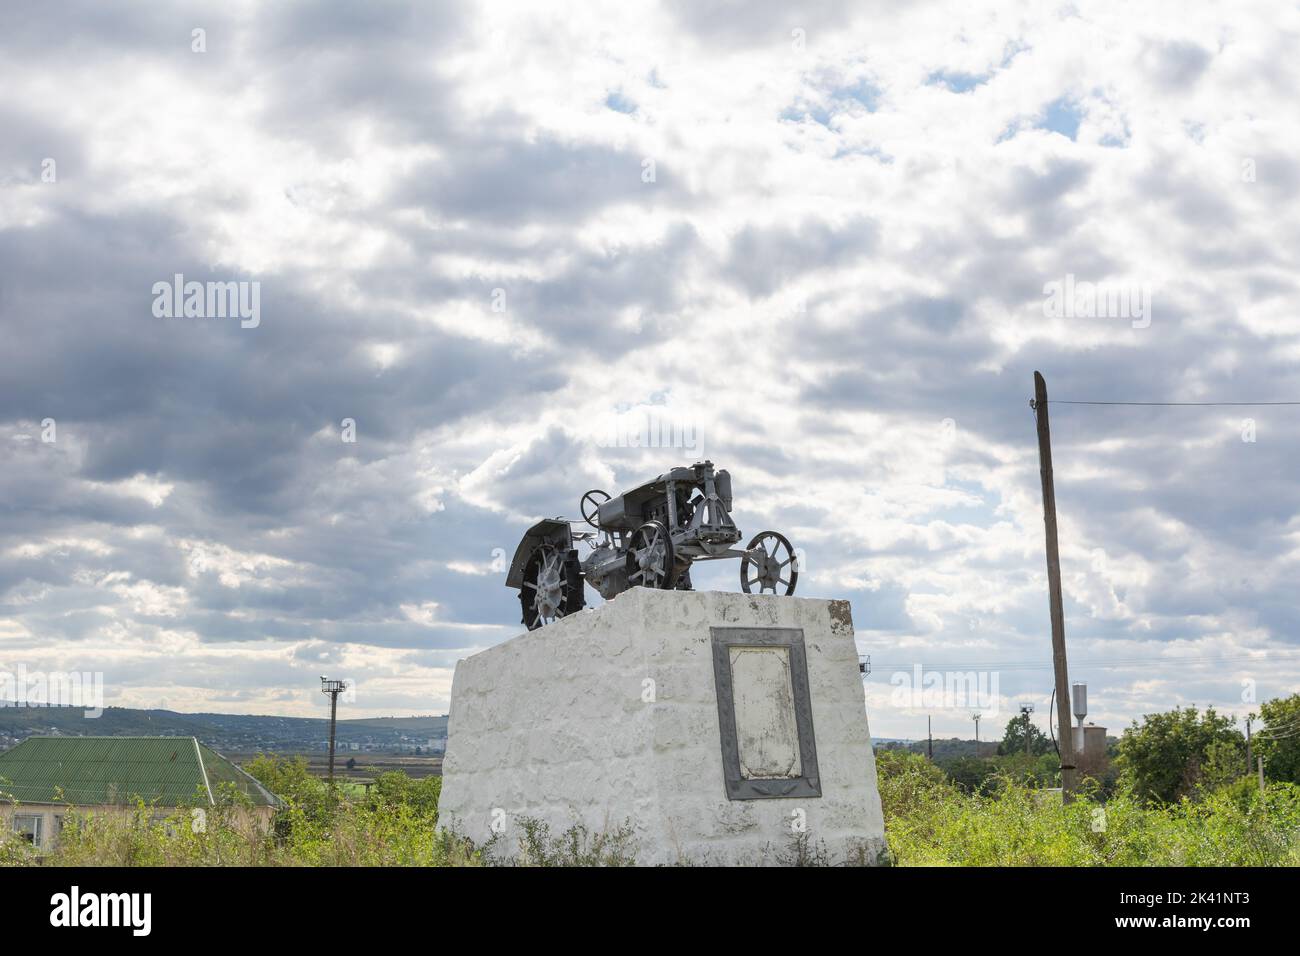 Monument de l'industrialisation. Monument au premier tracteur de la ville de Causeni, Moldavie. Trésor national de la Moldavie Banque D'Images